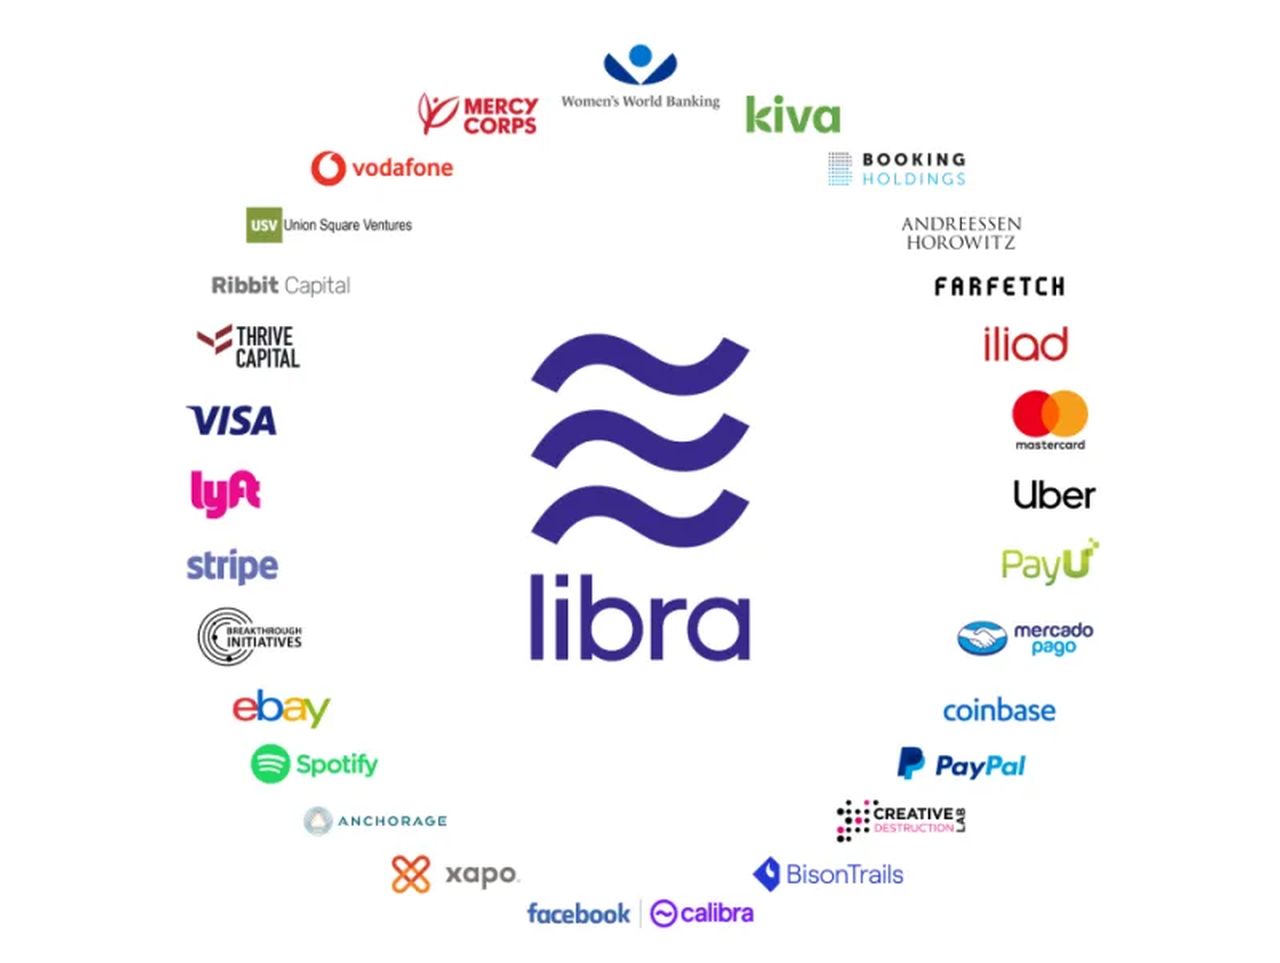 La Asociación Libra es una organización sin ánimo de lucro con sede en Ginebra, Suiza, que controla, mantiene y desarrolla Libra Blockchain y Libra Reserve